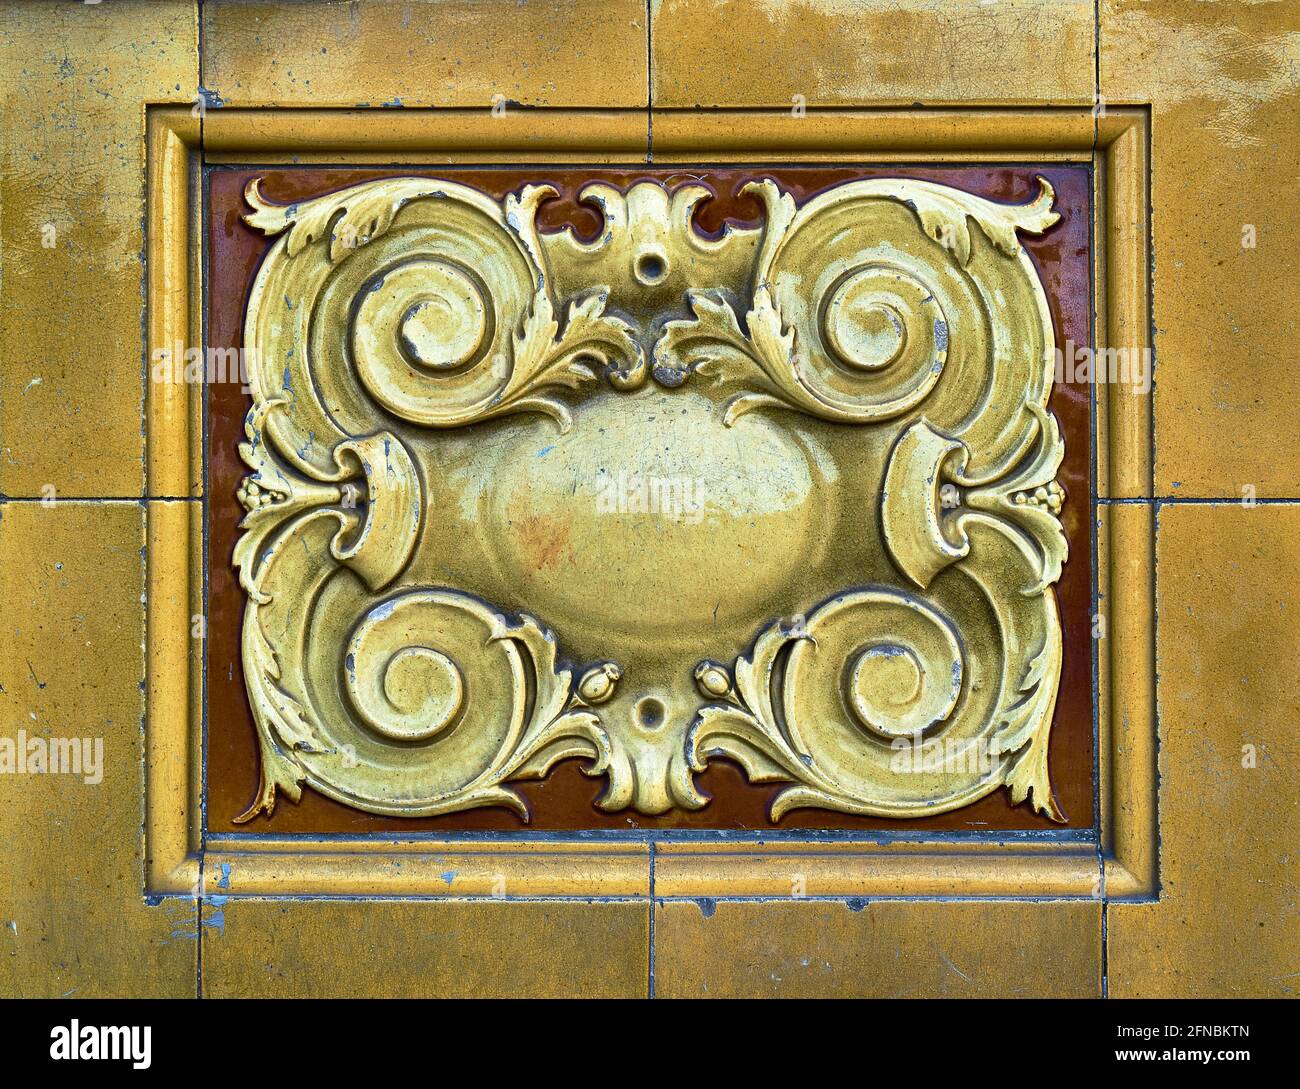 Particolare di piastrelle in ceramica elaborate e decorative in oro giallo e marrone caldo Foto Stock